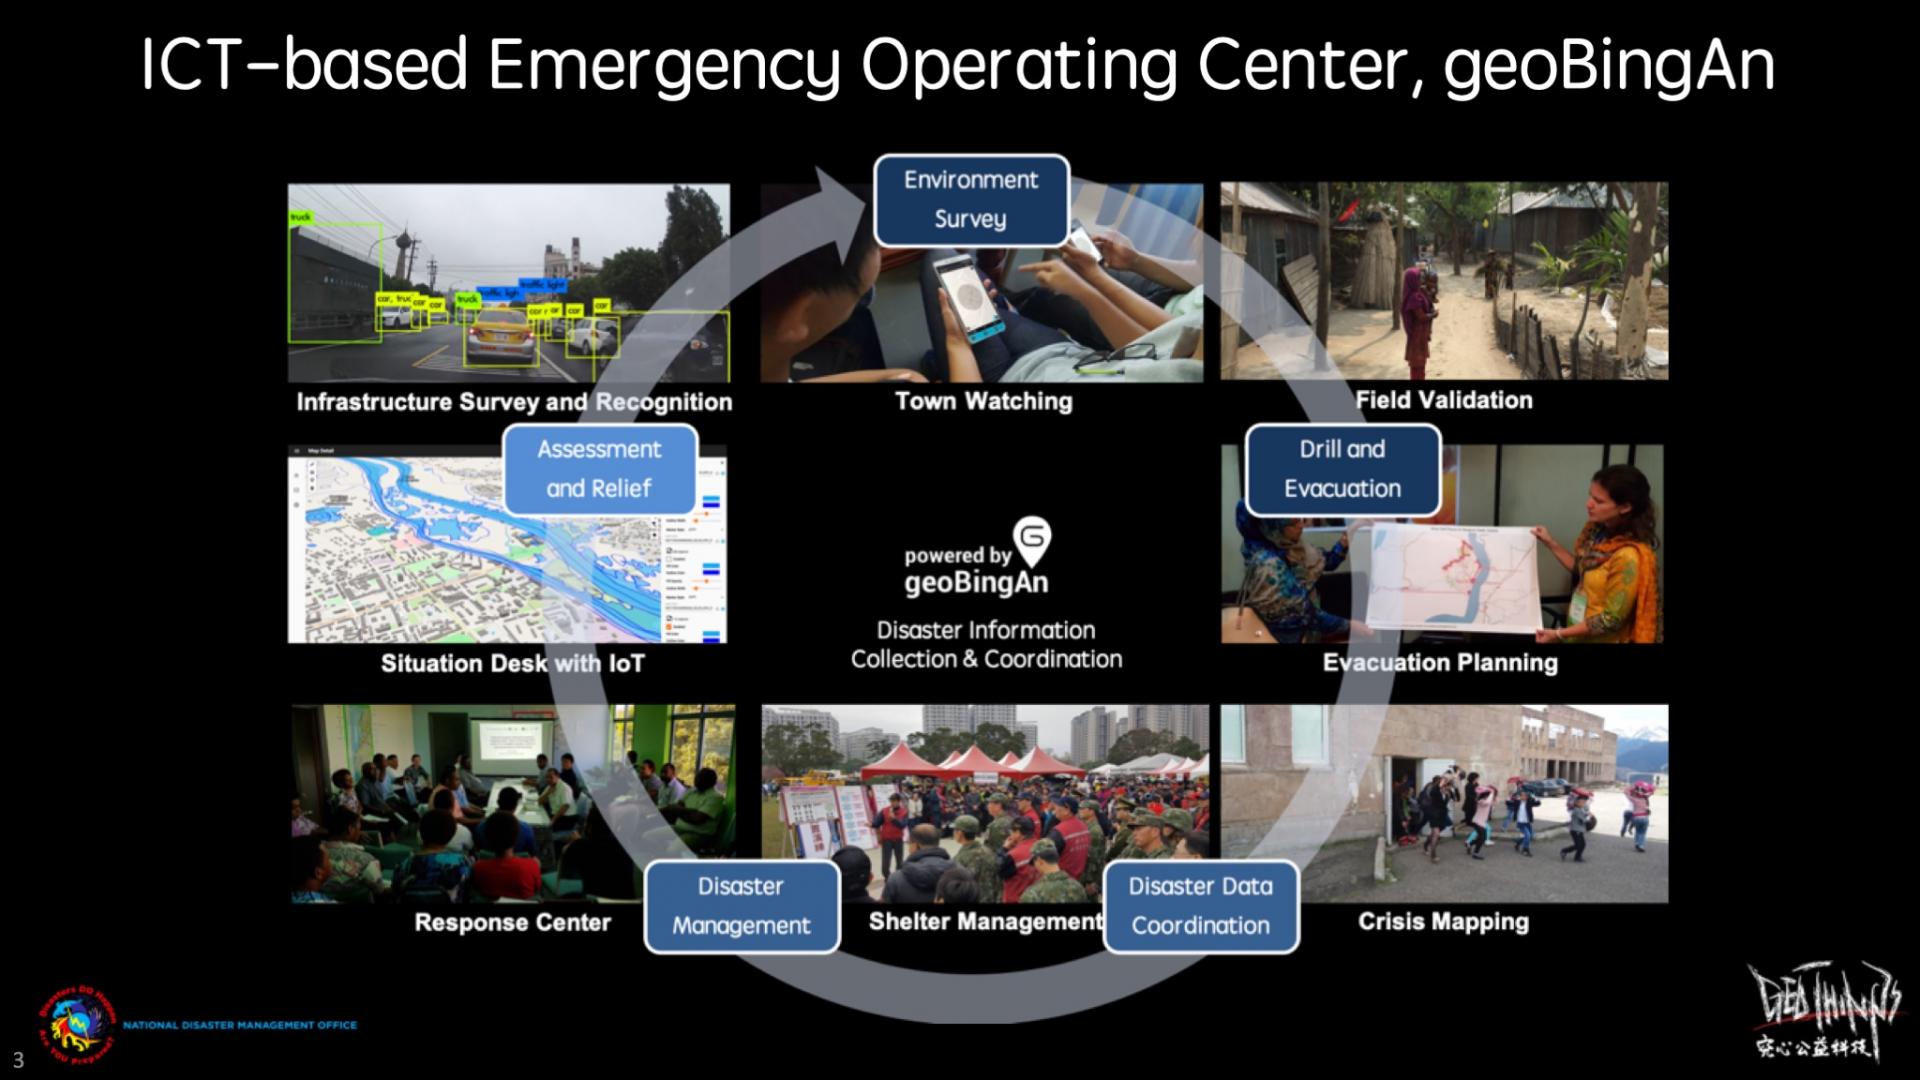 De humanitaire ICT, geoBingAn, is een geïntegreerde service die werkt voor respons voor, tijdens en na de ramp